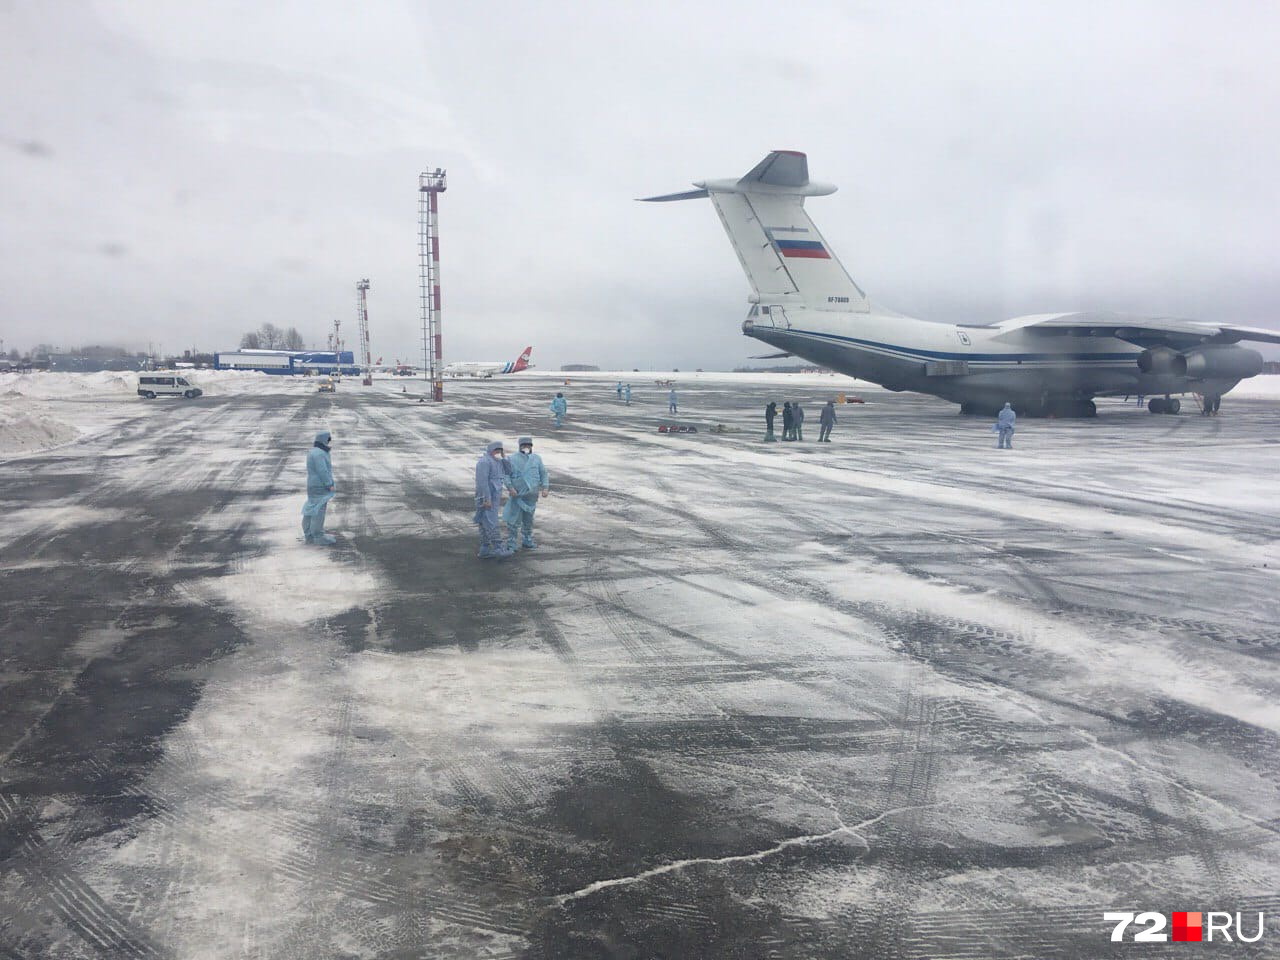 Специалисты в средствах защиты готовились встретить Ил-76 с пассажирами из Китая на борту